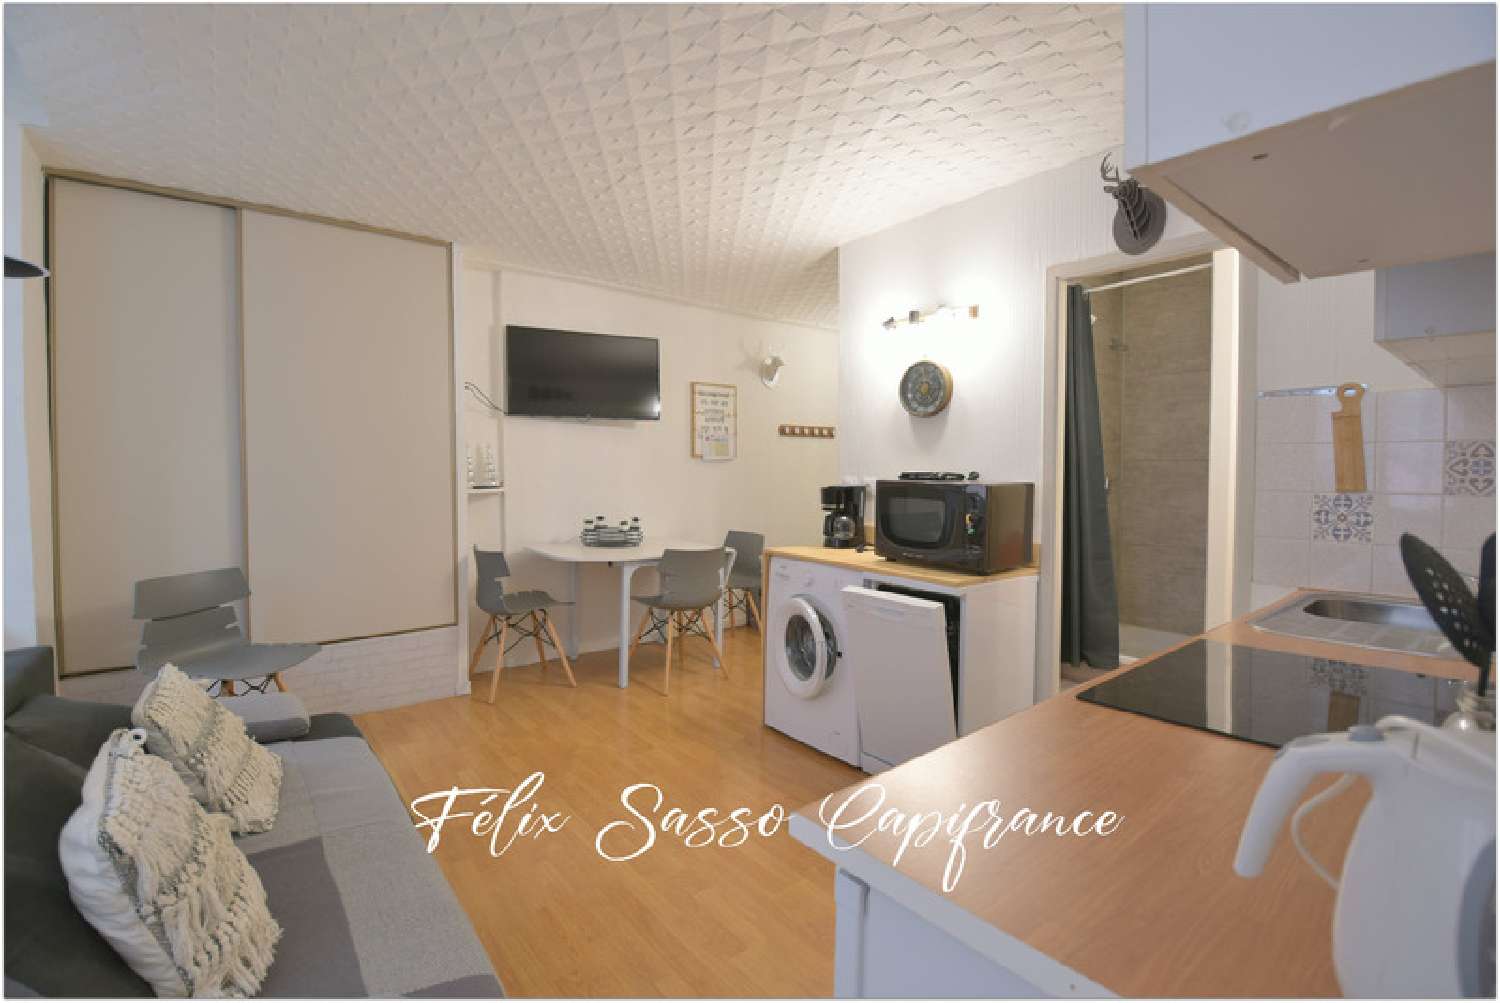  à vendre appartement Cauterets Hautes-Pyrénées 3